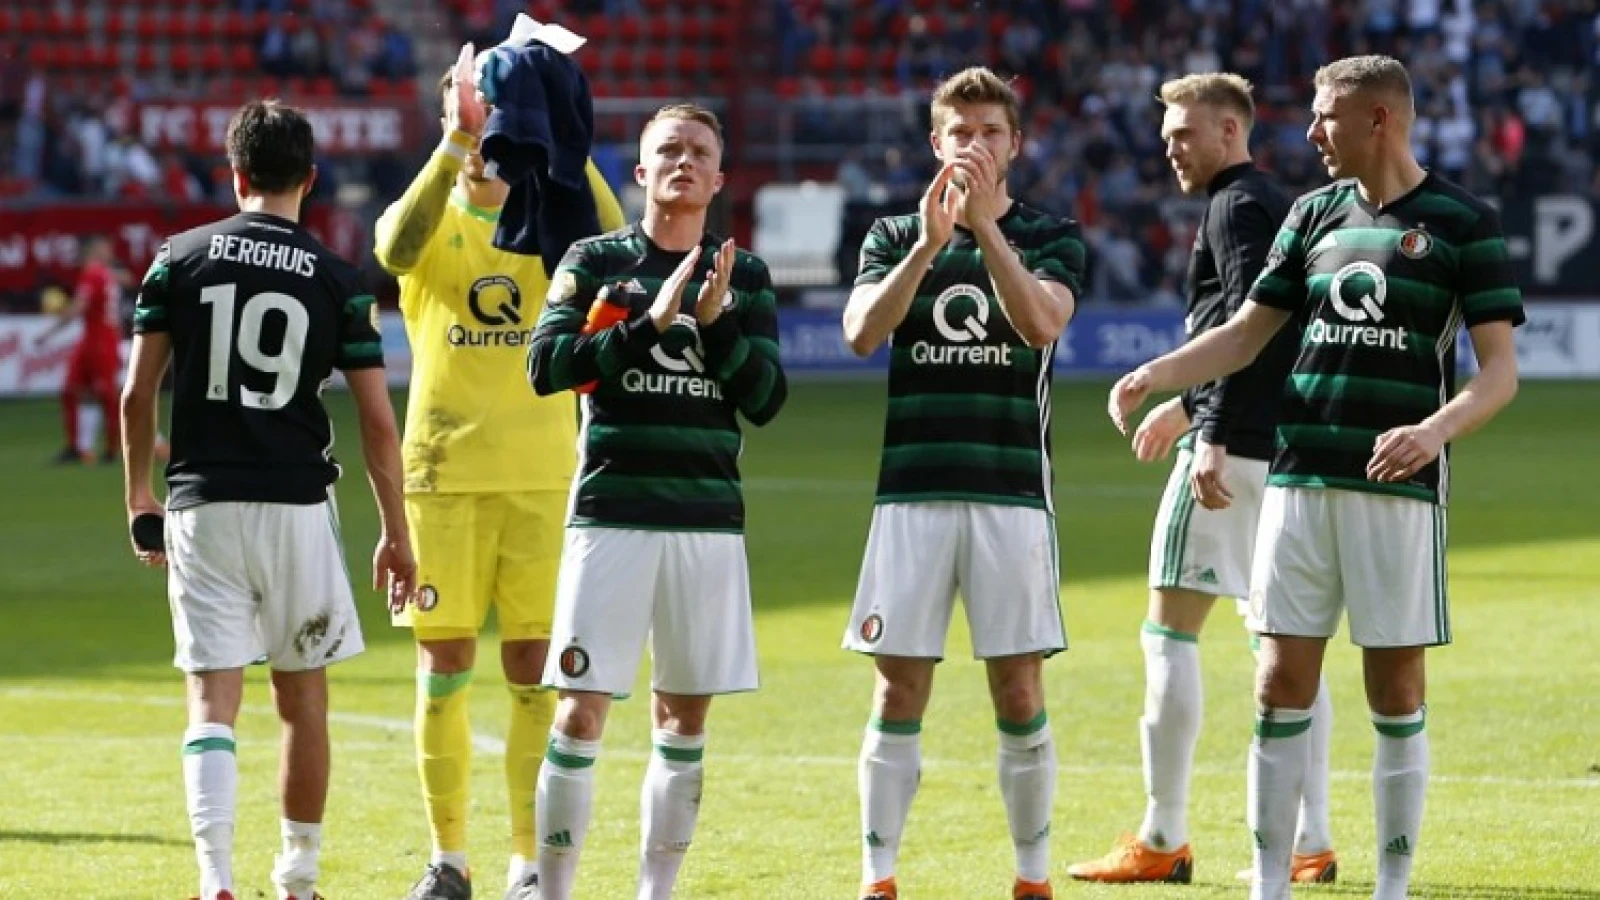 Krabbendam kritisch op buitenspeler: 'Geen speler die Feyenoord beter maakt'